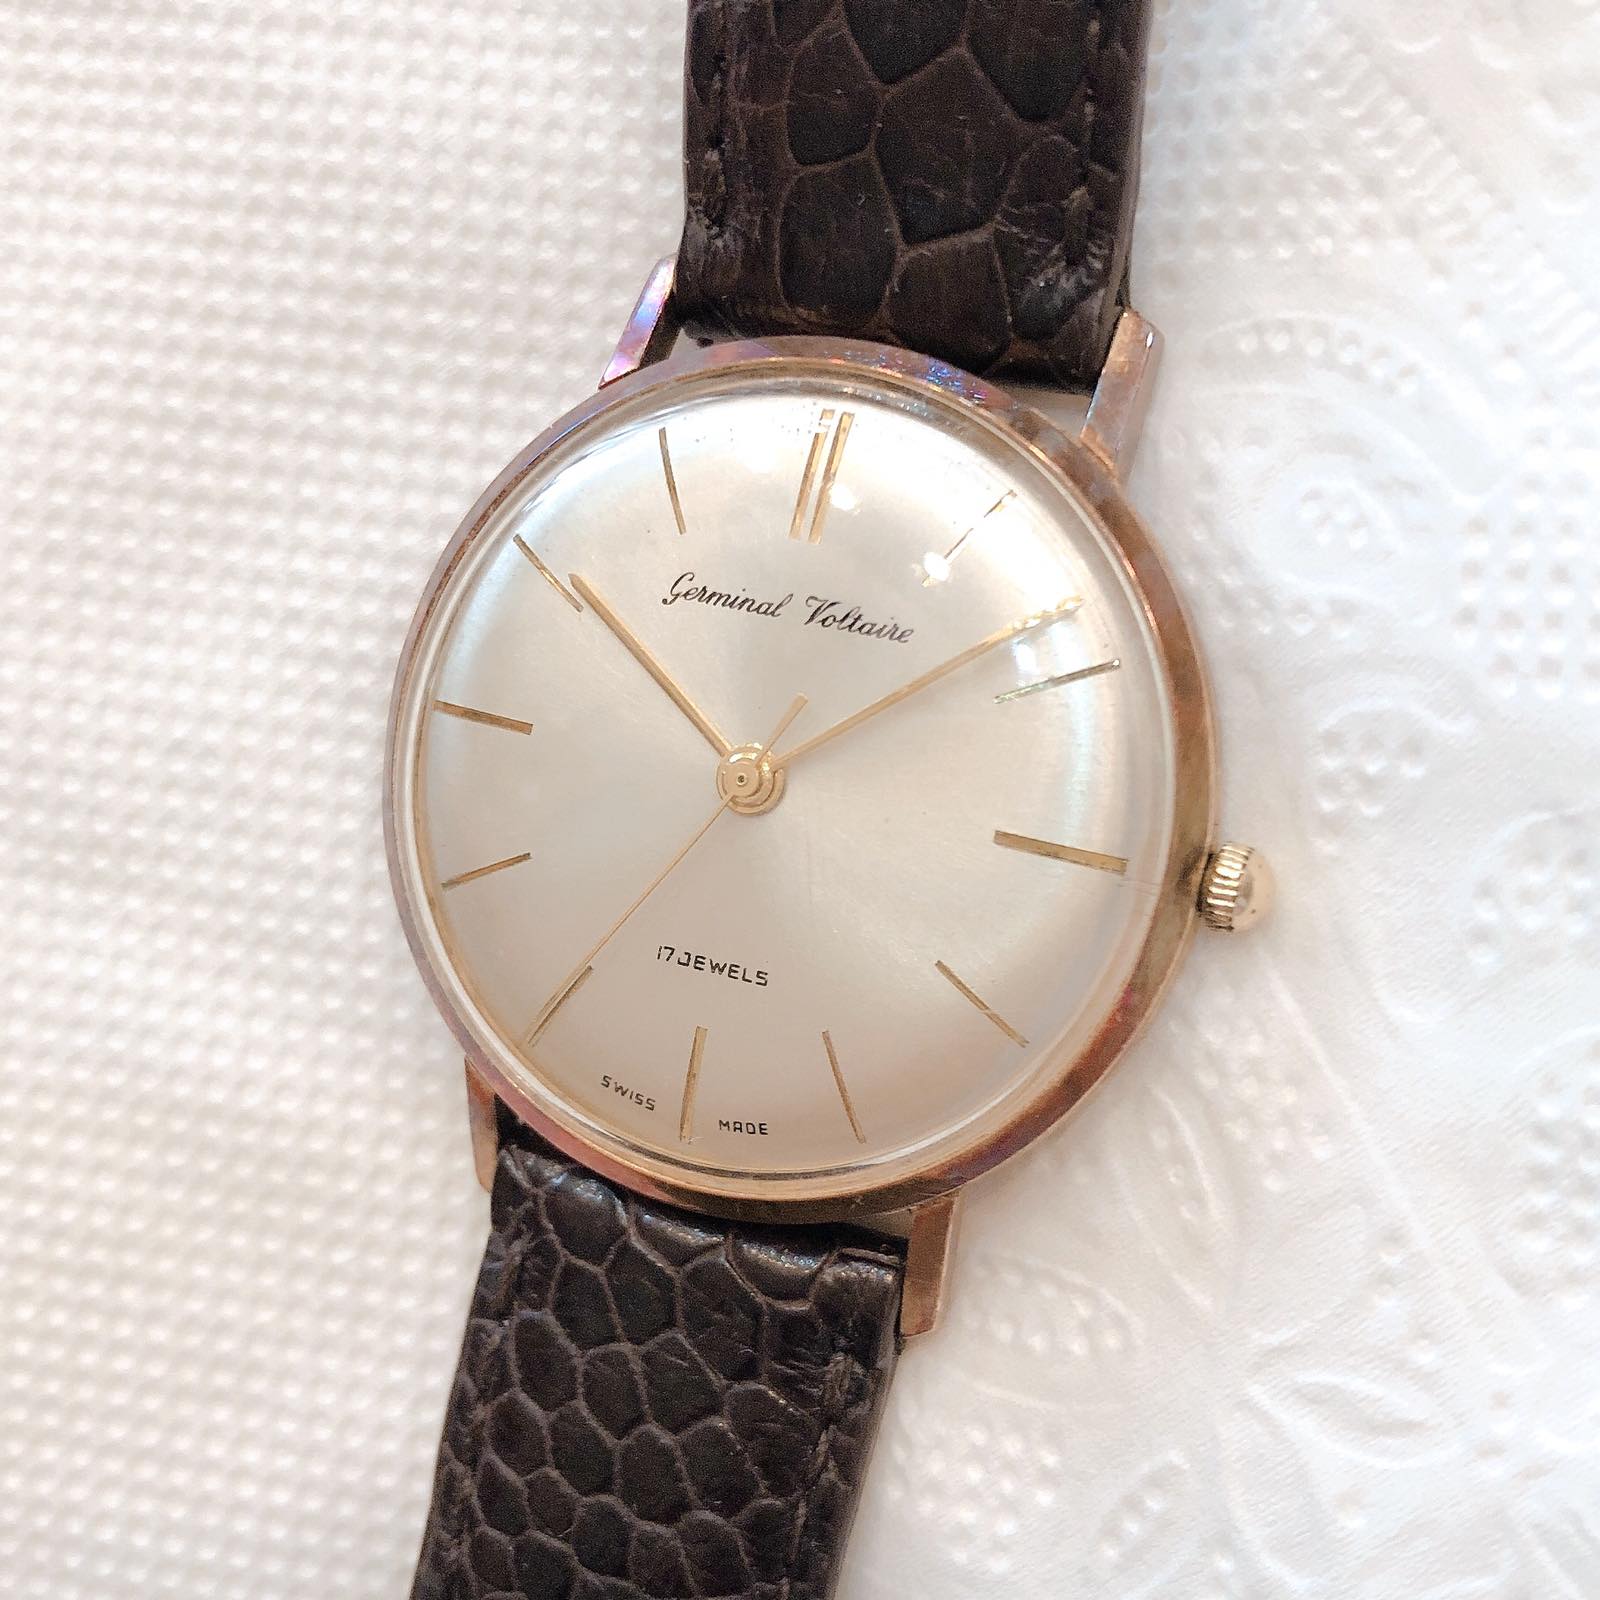 Đồng hồ cổ Germinal Voltaire lên dây vàng đúc 14k chính hãng thụy sỹ